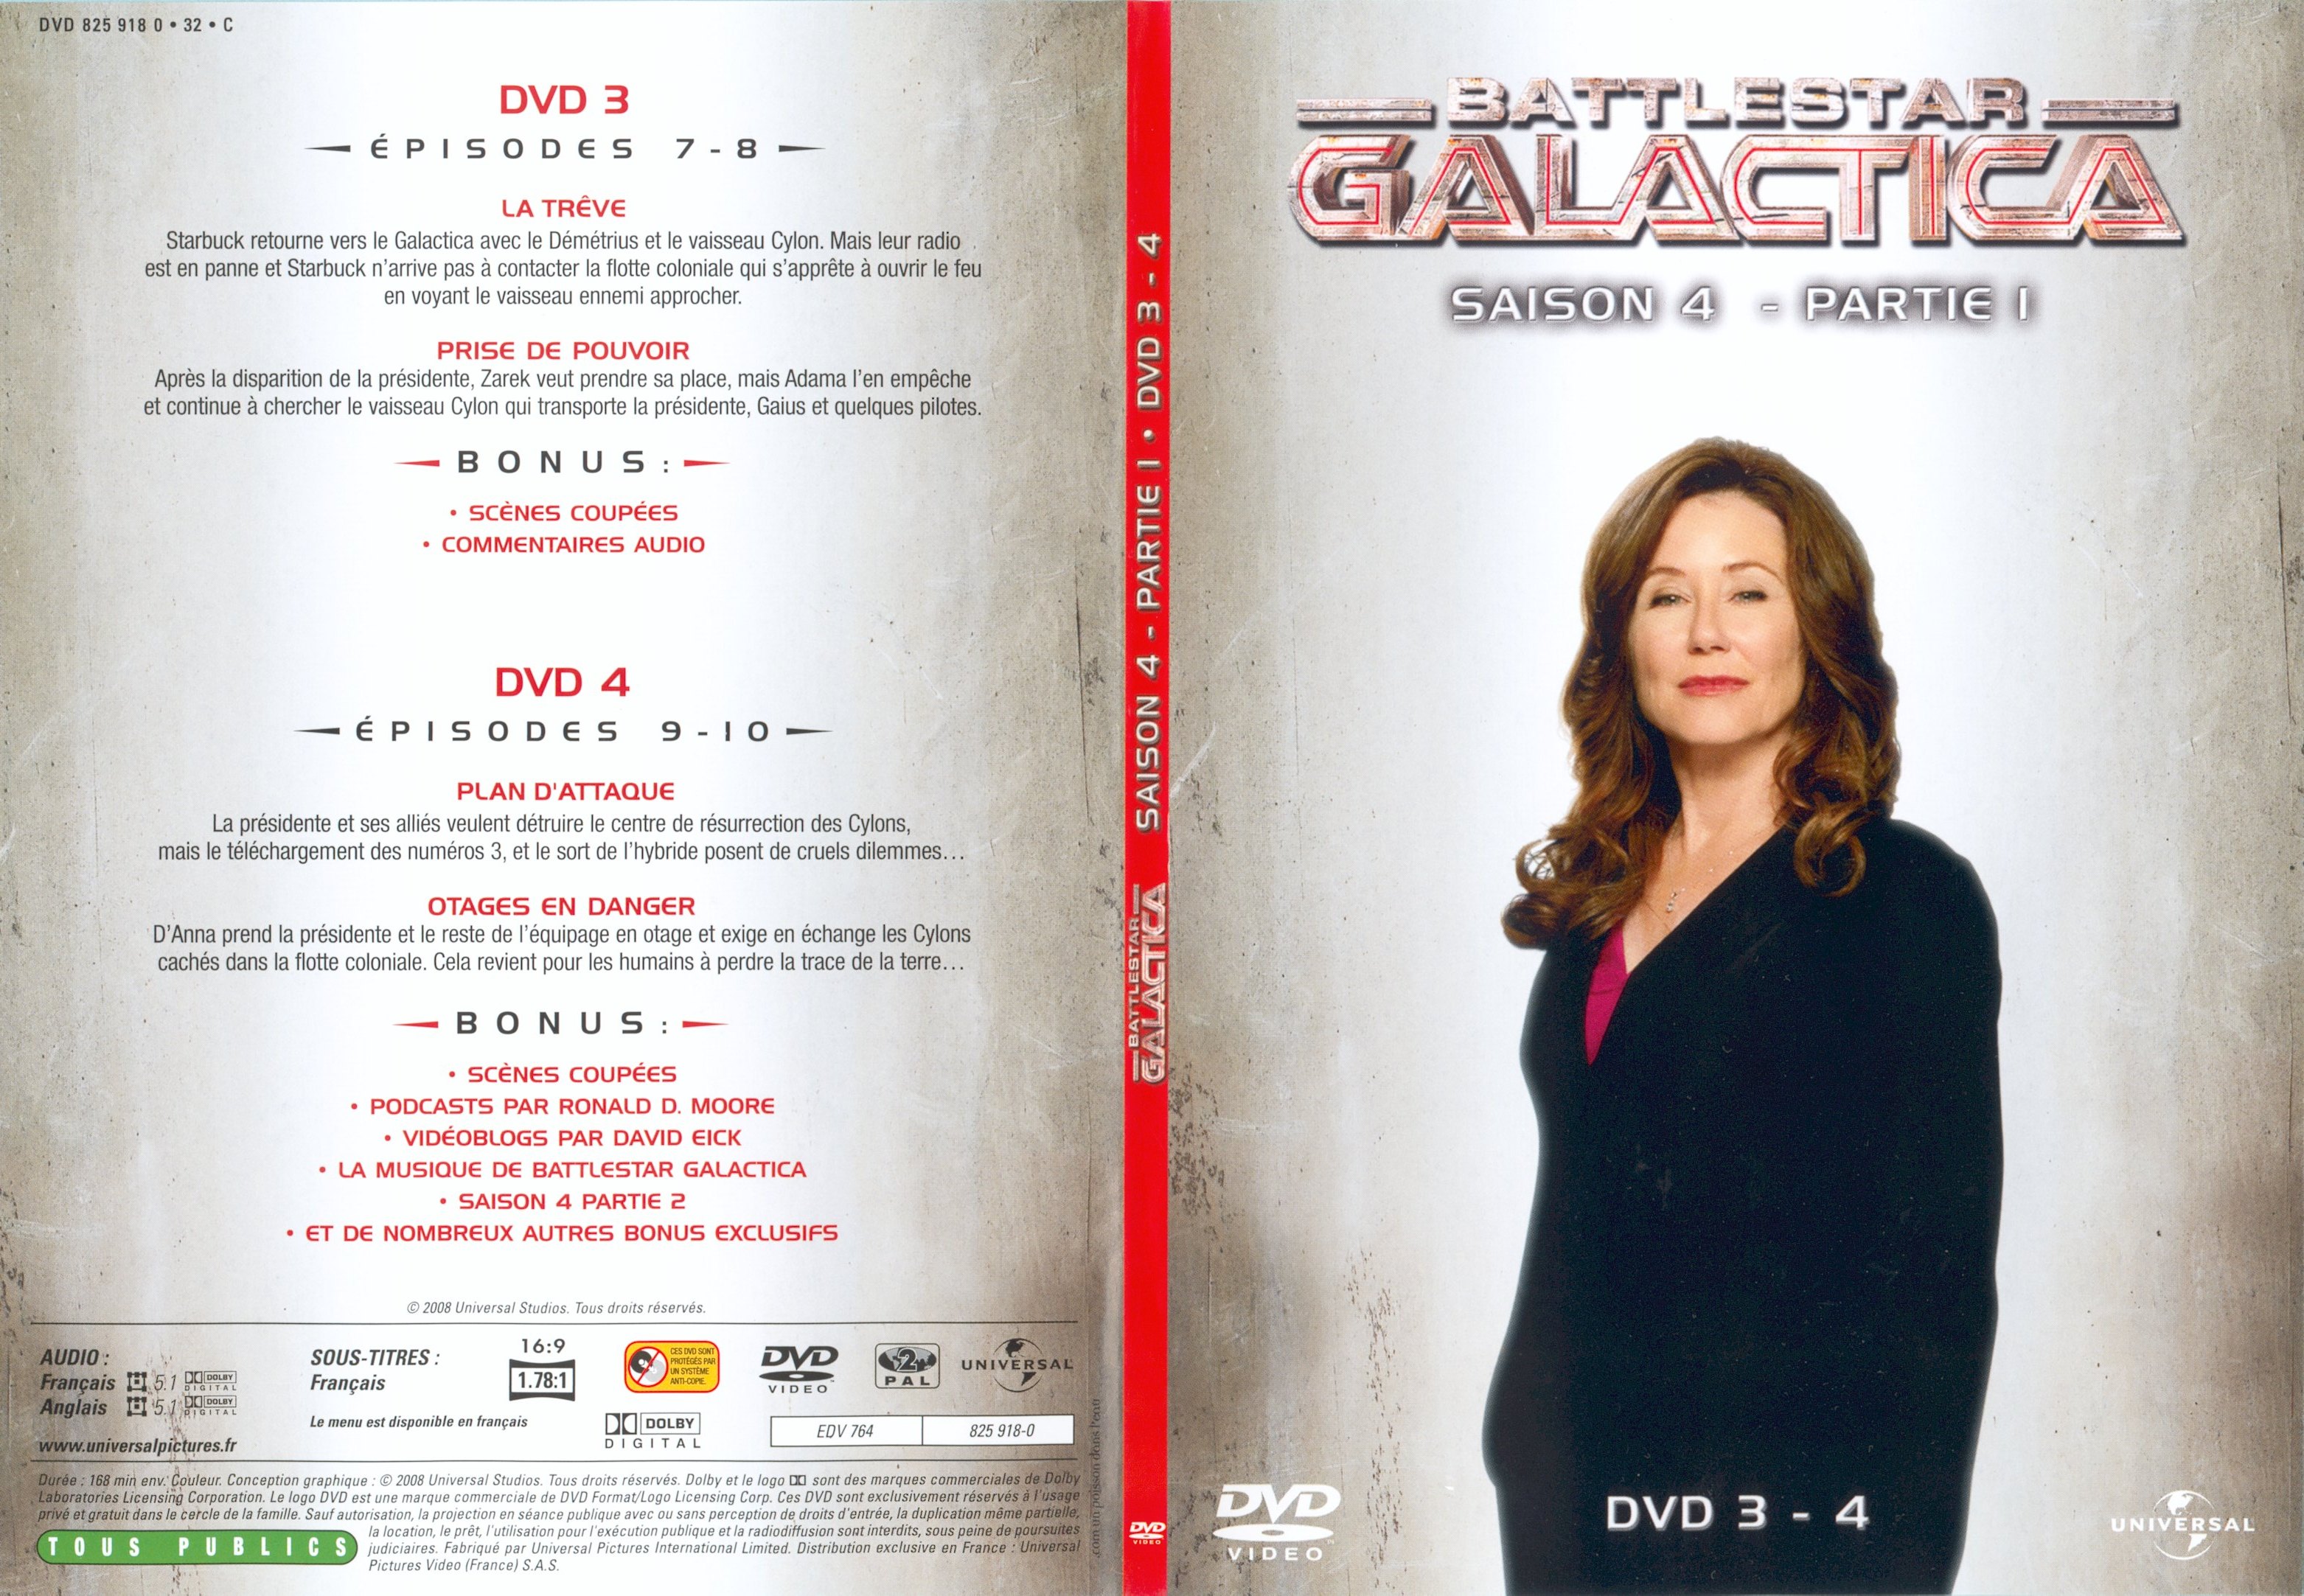 Jaquette DVD Battlestar Galactica Saison 4 partie 1 DVD 3-4